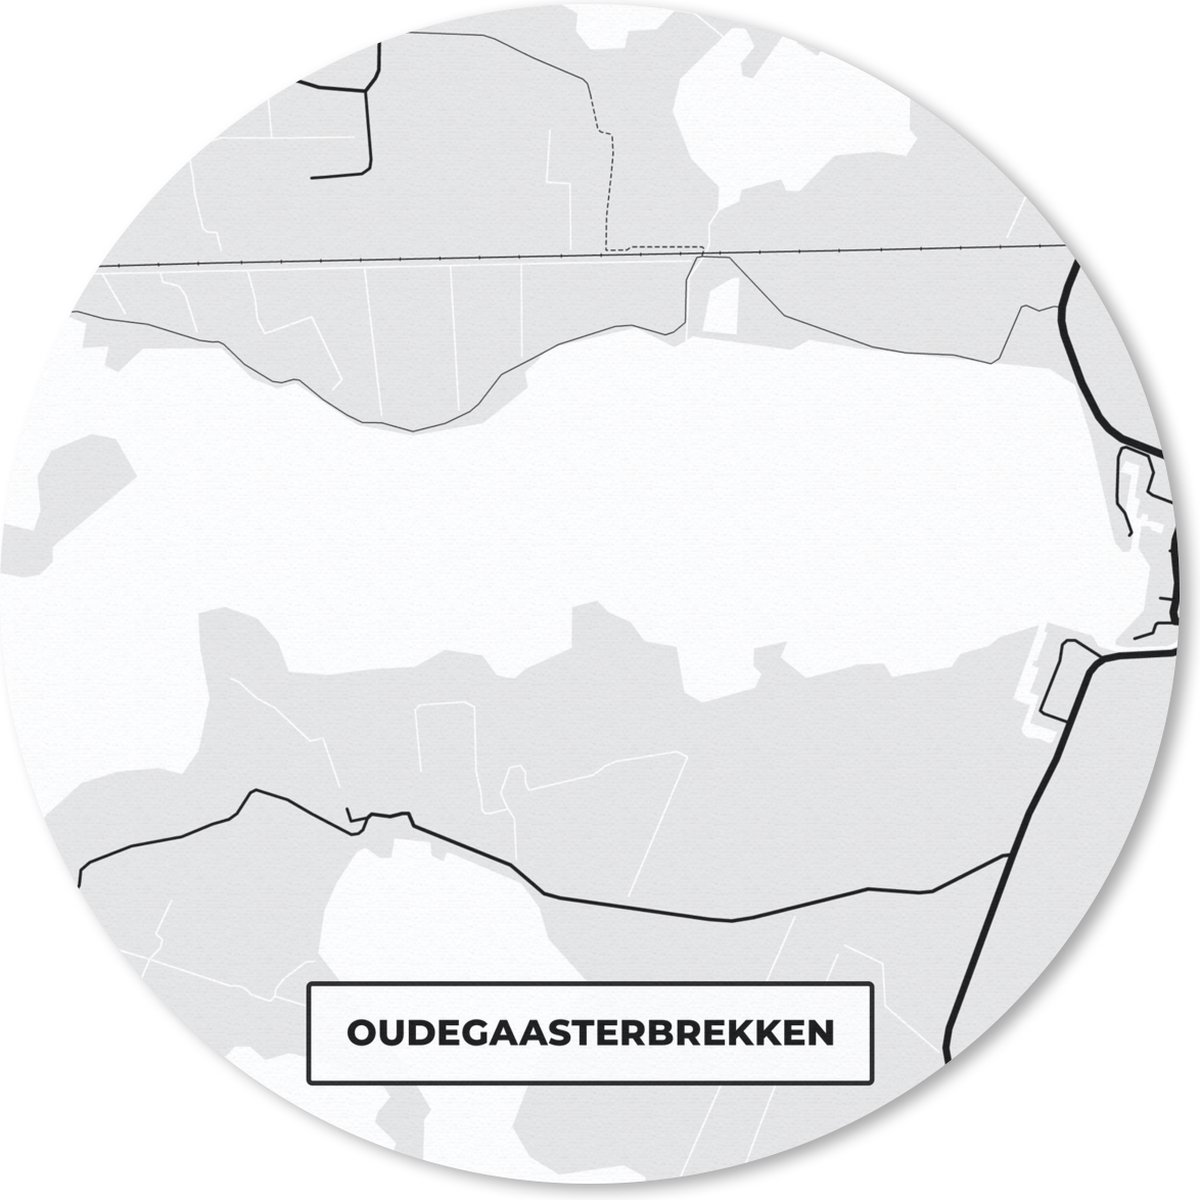 Muismat - Mousepad - Rond - Stadskaart - Friesland - Oudegaasterbrekken - Kaart - Plattegrond - 40x40 cm - Ronde muismat